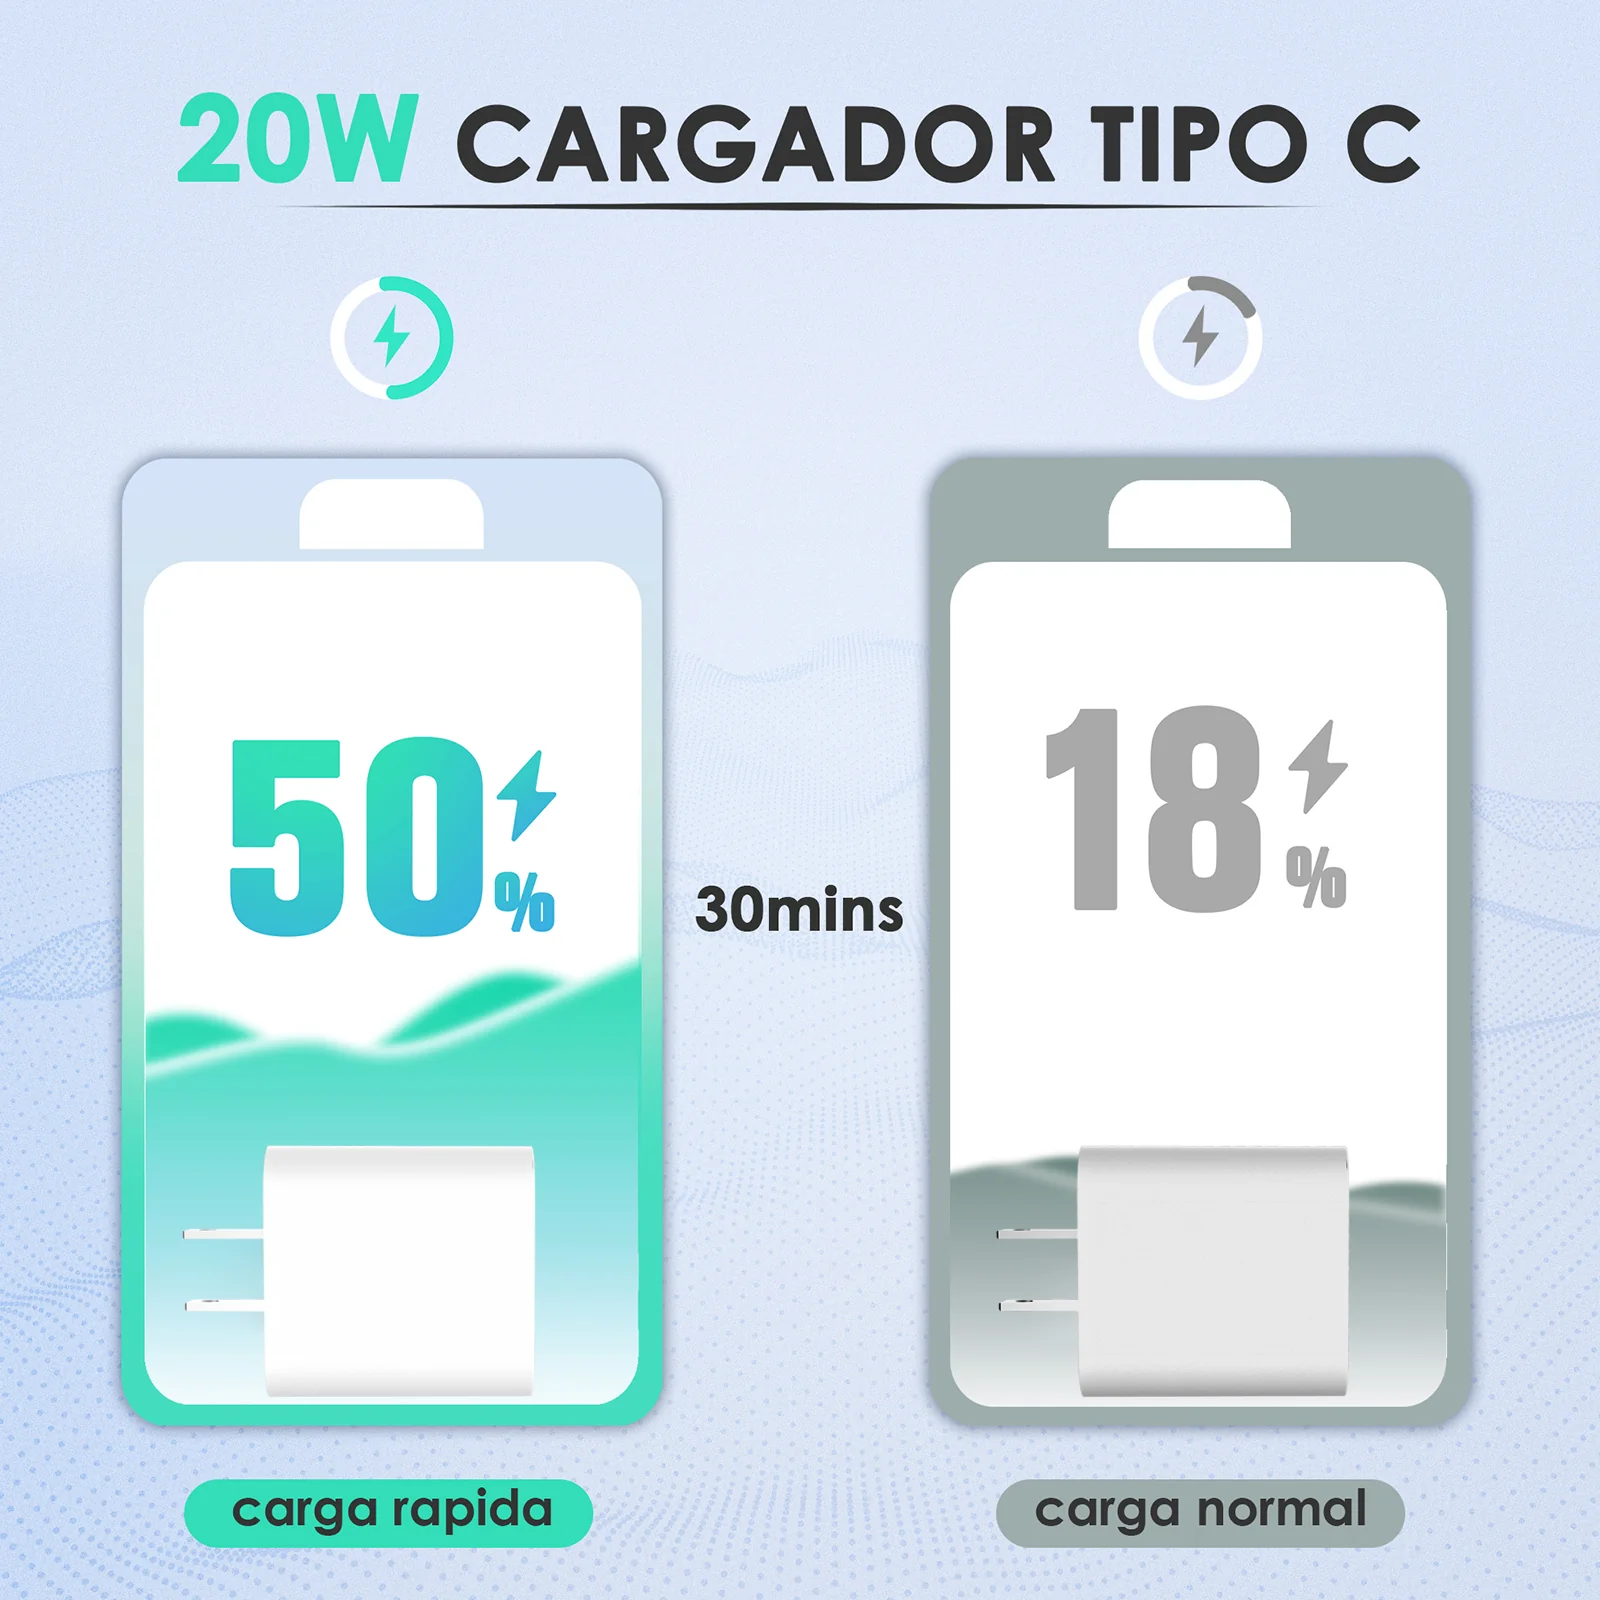 Cargador Iphone 5W Completo Carga Rapida AAA - Luegopago